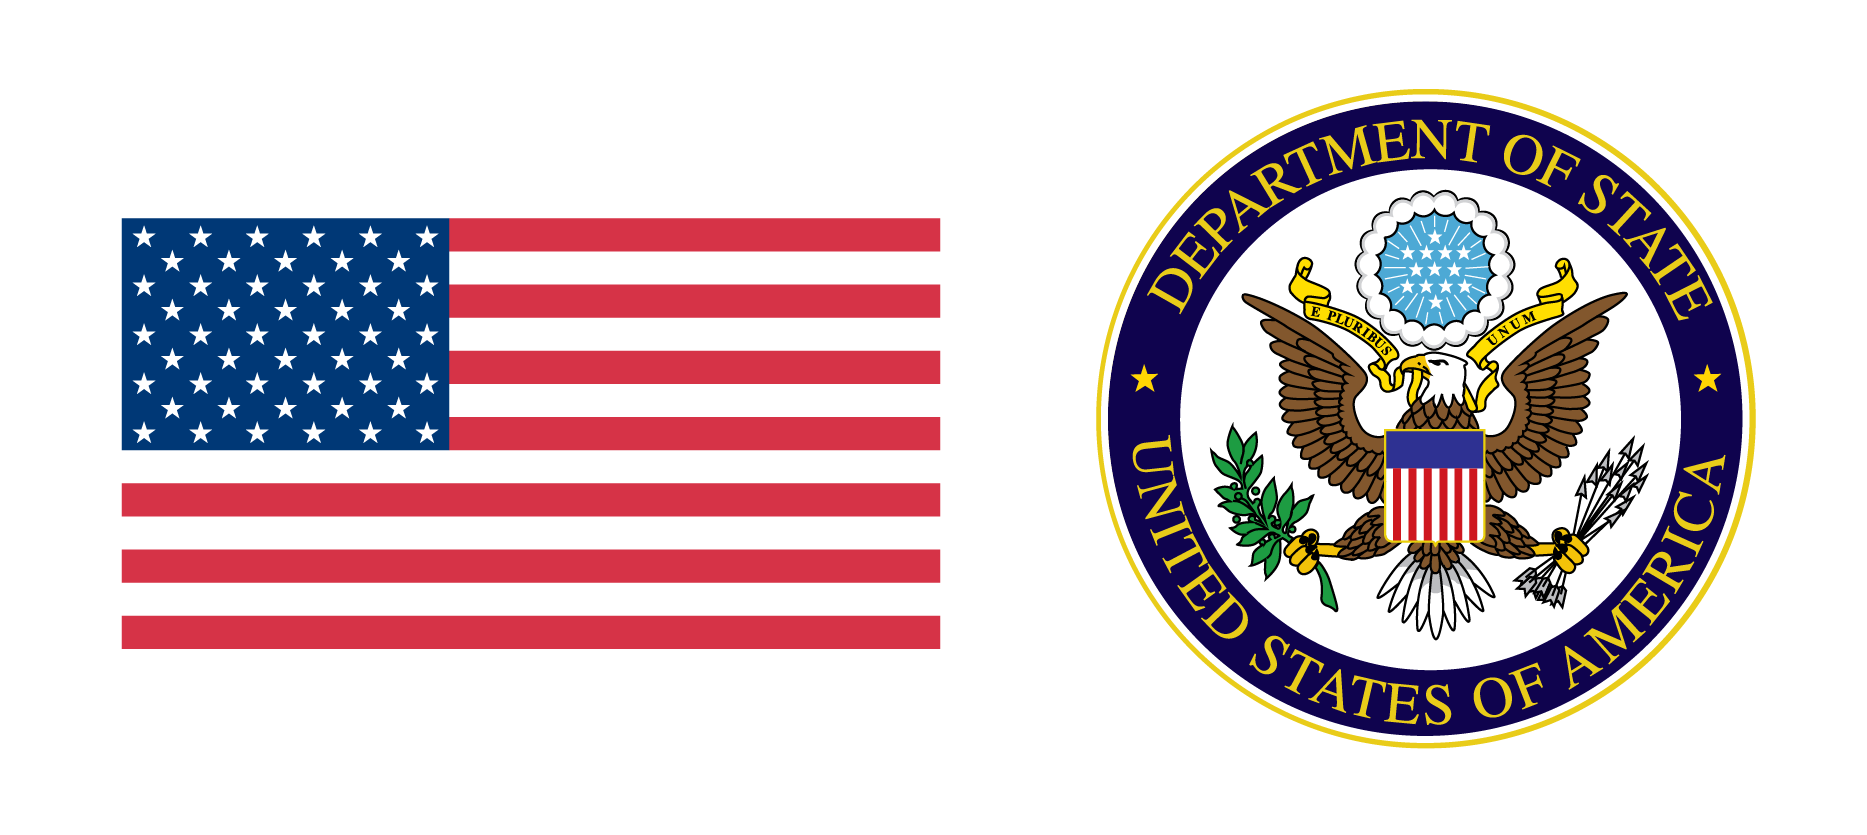 Combolist usa. Флаг и герб США. Соединённые штаты Америки флаг. Соединённые штаты Америки герб. Символ Соединенных Штатов Америки.